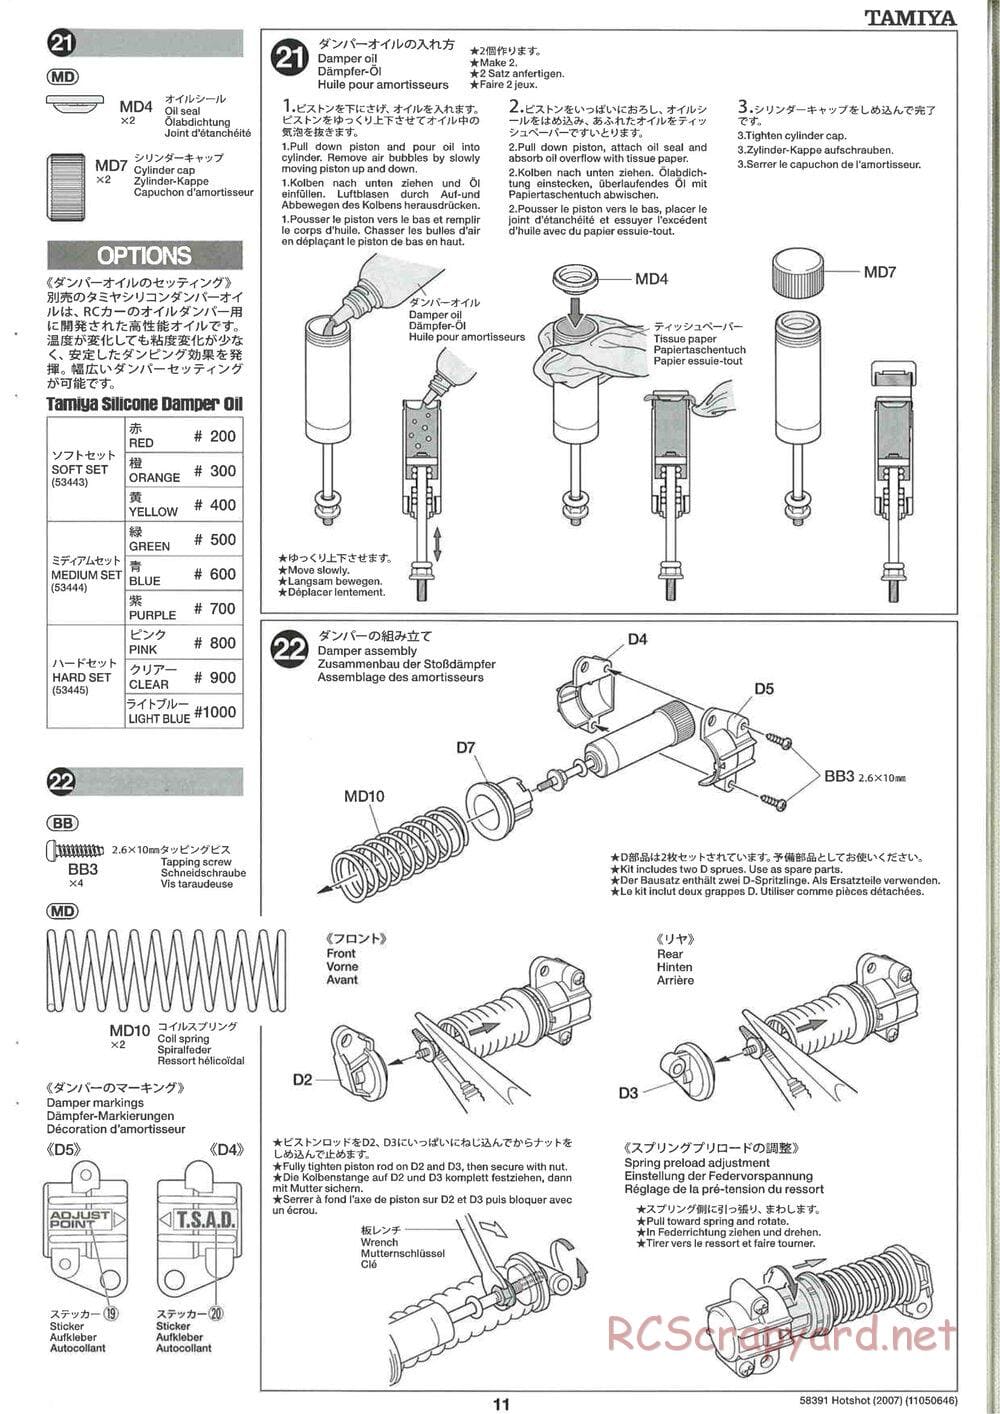 Tamiya - Hotshot - 2007 - HS Chassis - Manual - Page 11